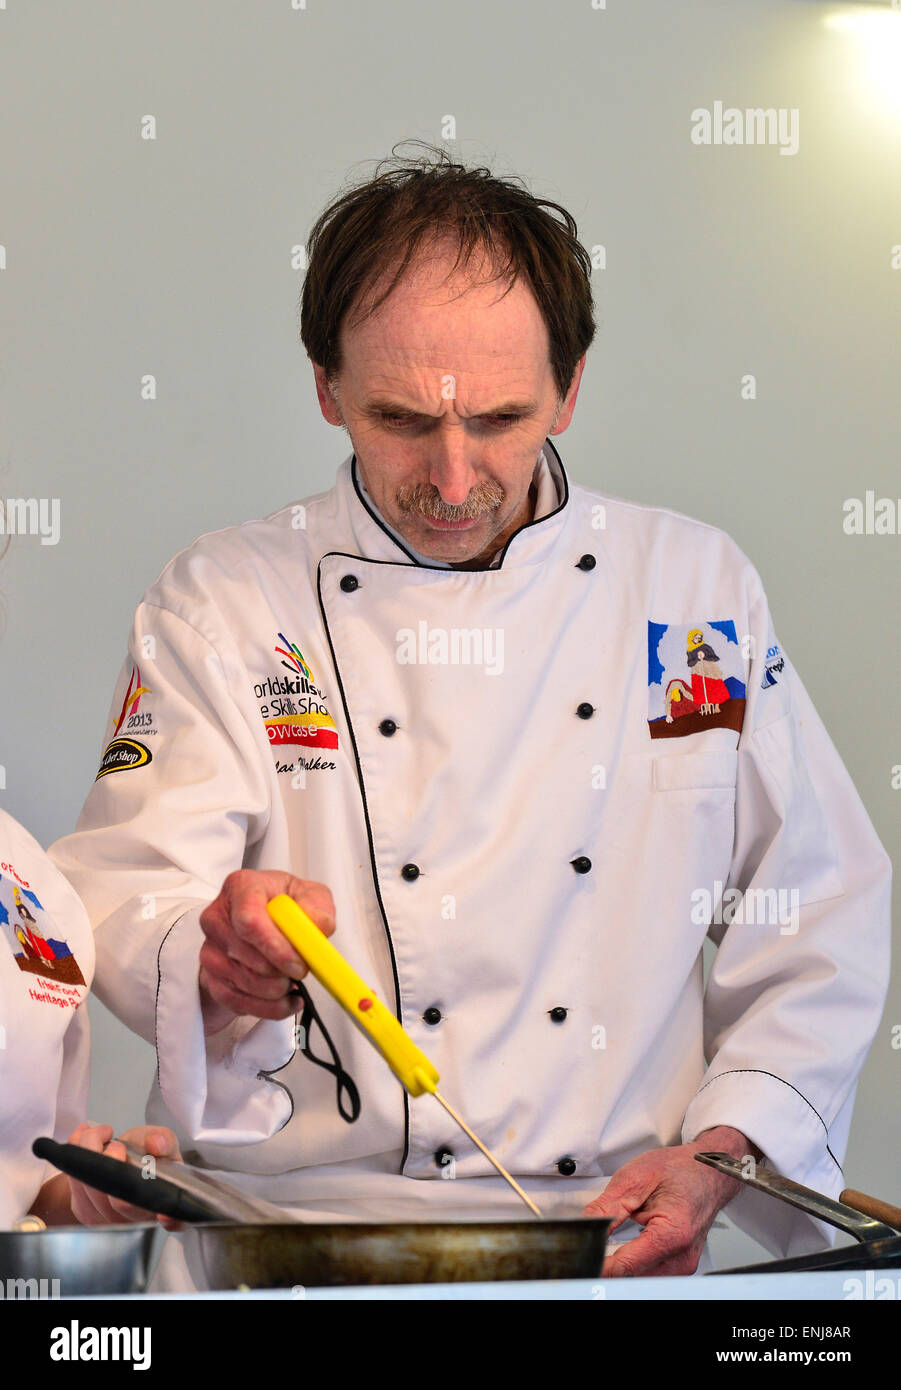 Chef cuisinier avec pliage numérique Thermomètre à sonde pour vérifier la température d'aliments chauds à démonstration culinaire à Londonderry Banque D'Images